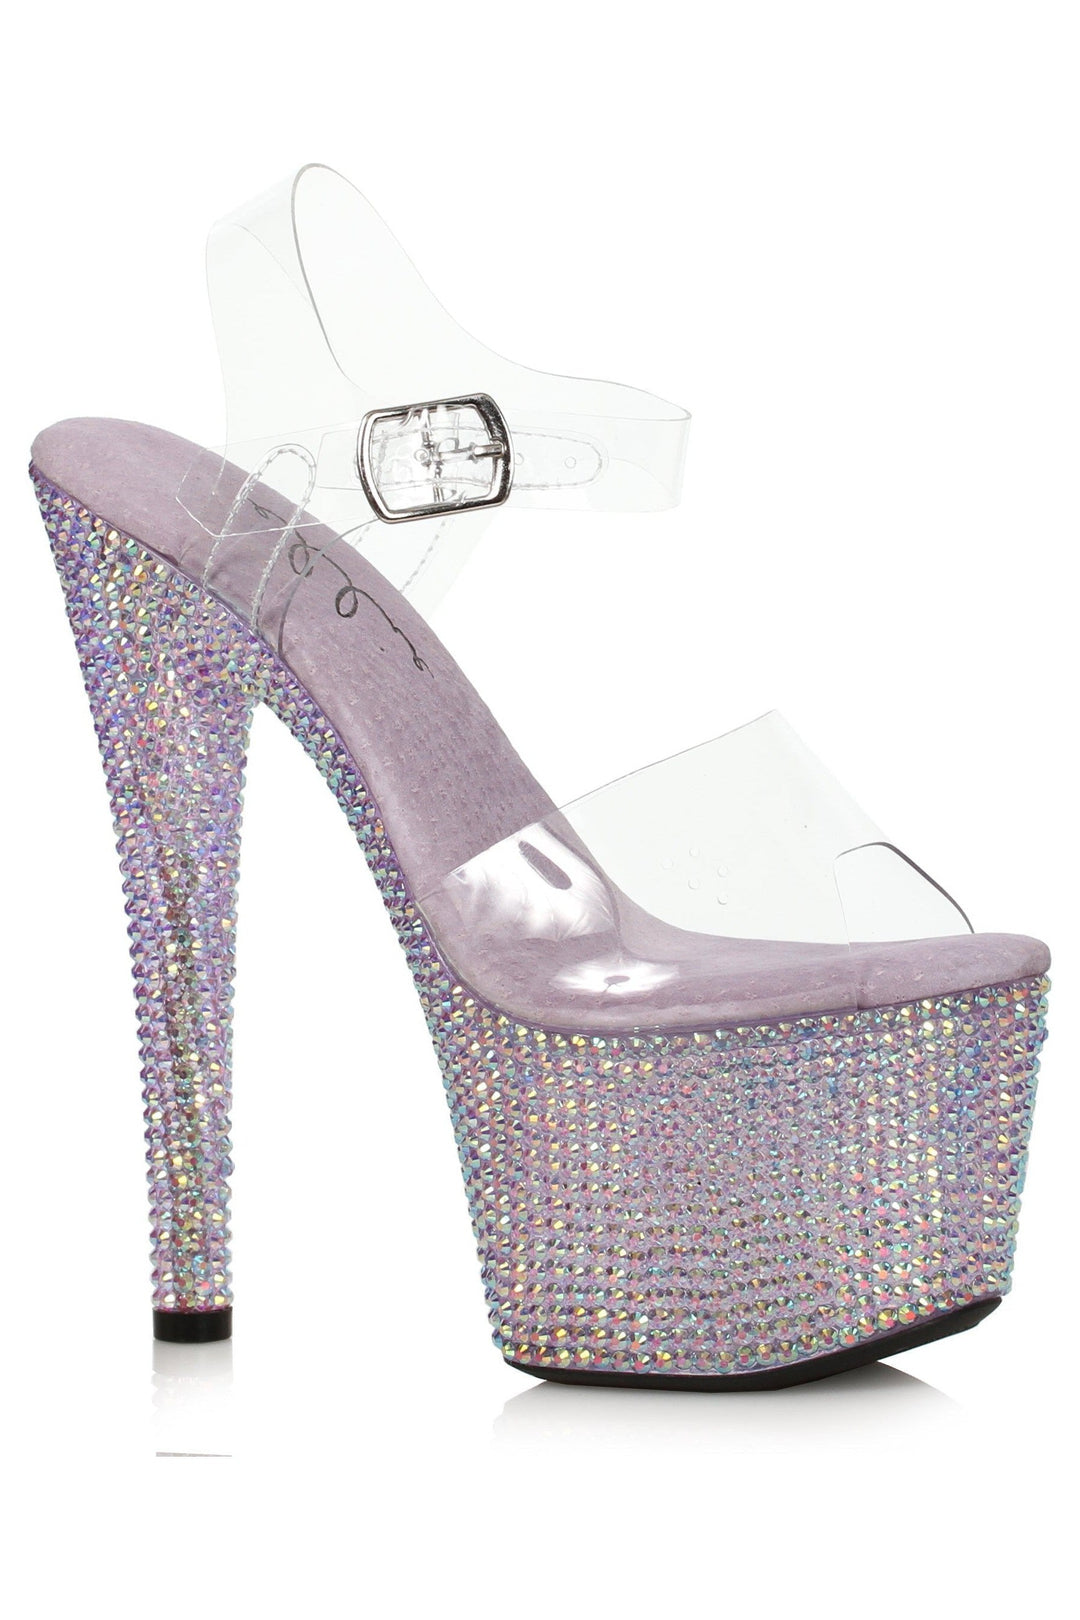 Ellie Shoes Purple Sandals Platform Stripper Shoes | Buy at Sexyshoes.com